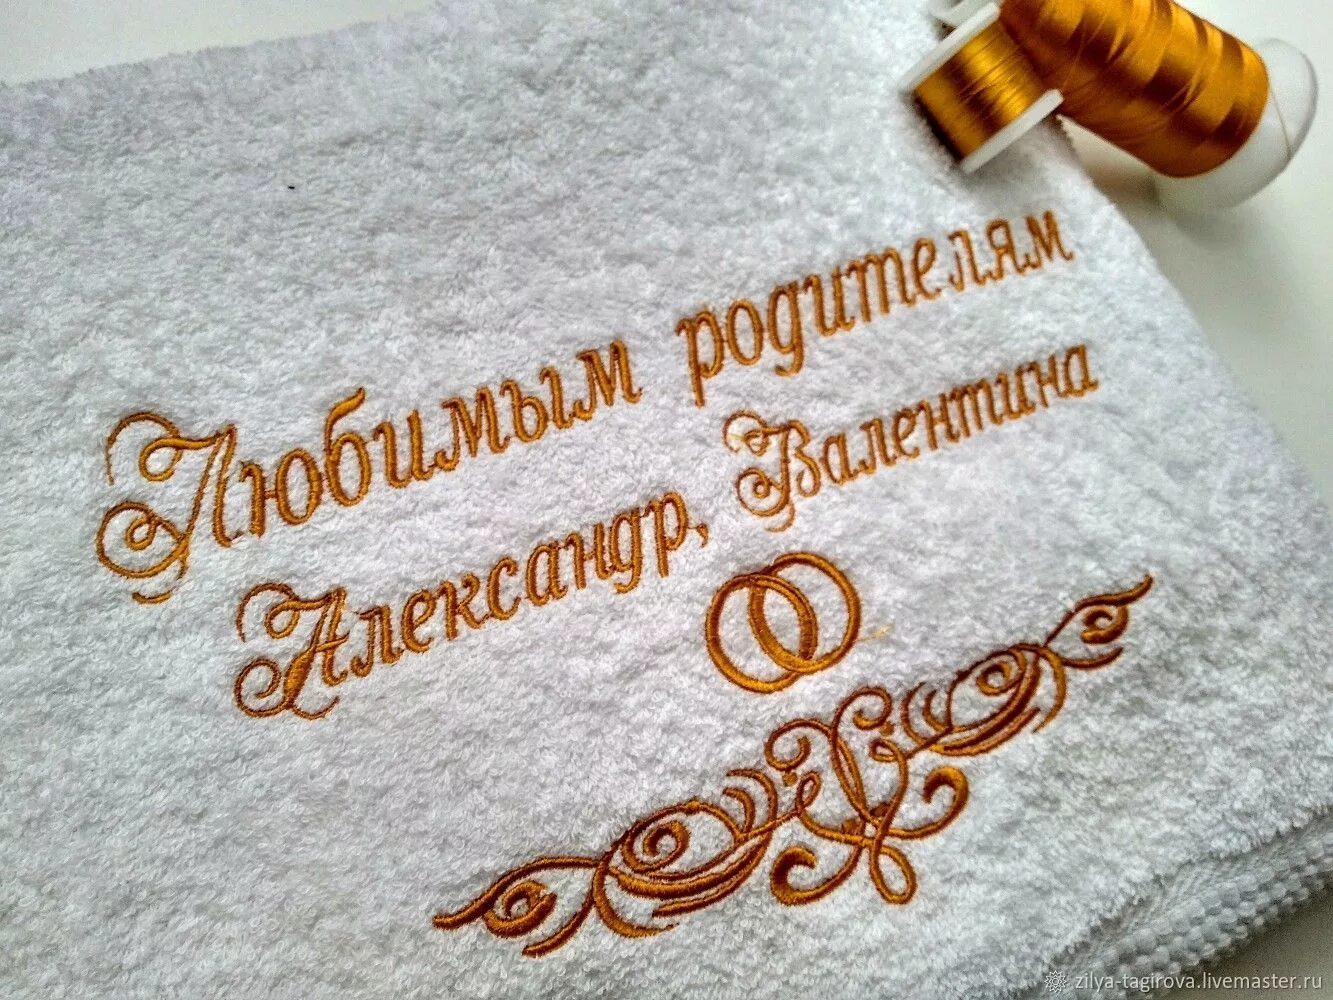 Мастер полотенец. Машинная вышивка на полотенце. Именное полотенце с вышивкой. Казанское полотенце.